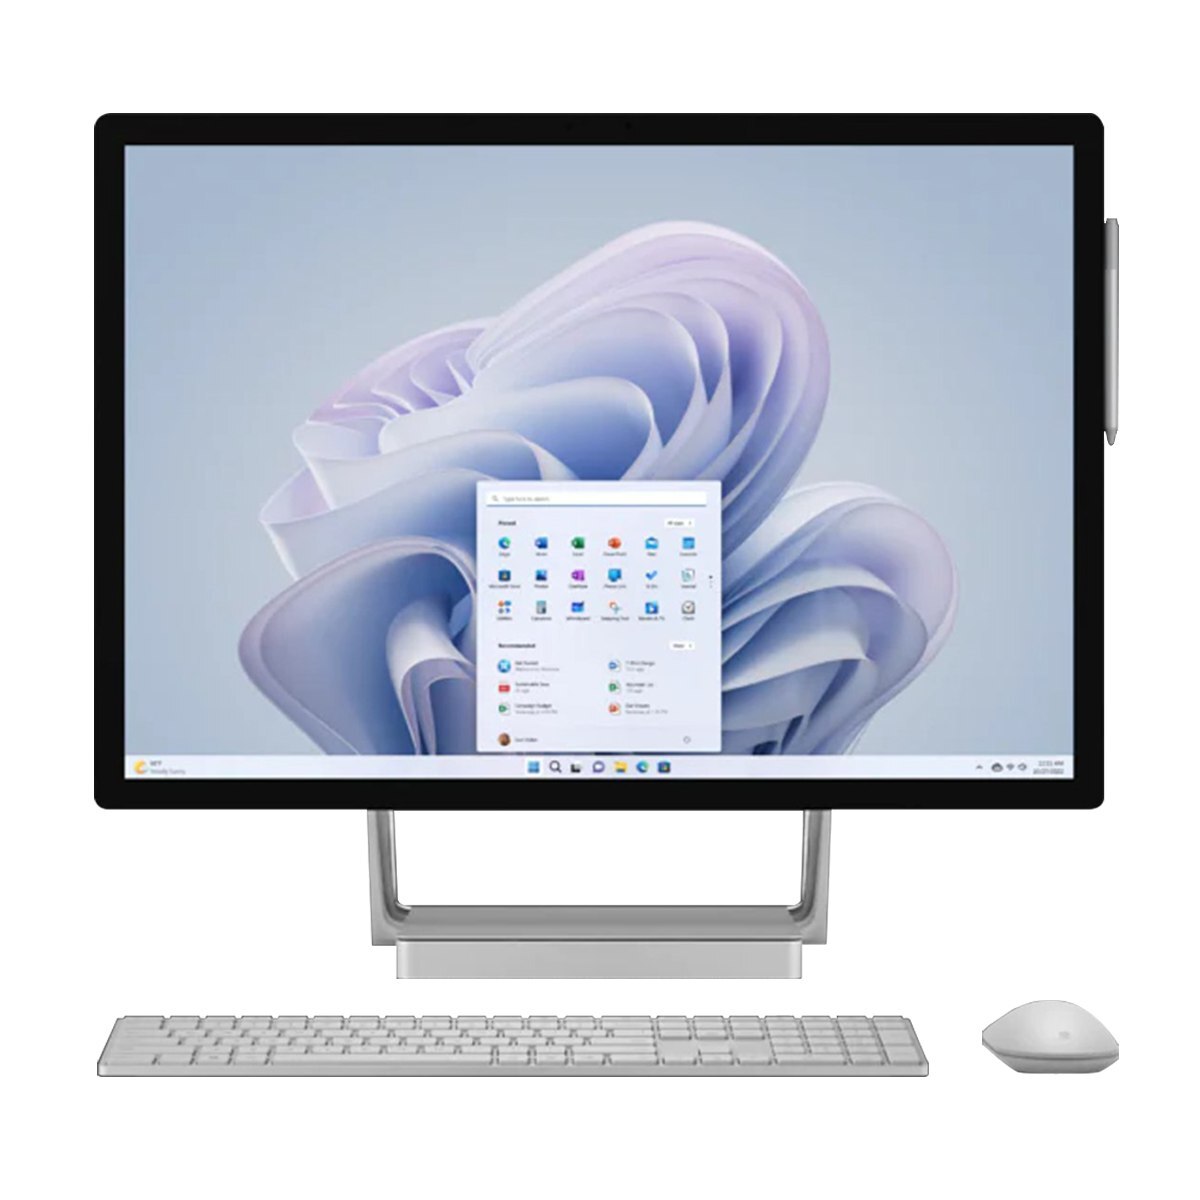 Máy tính để bàn Surface Studio 2 Plus - Intel core i7-11370H, 32GB RAM, SSD 1TB, Nvidia GeForce RTX 3060 6GB GDDR6, 28 inch